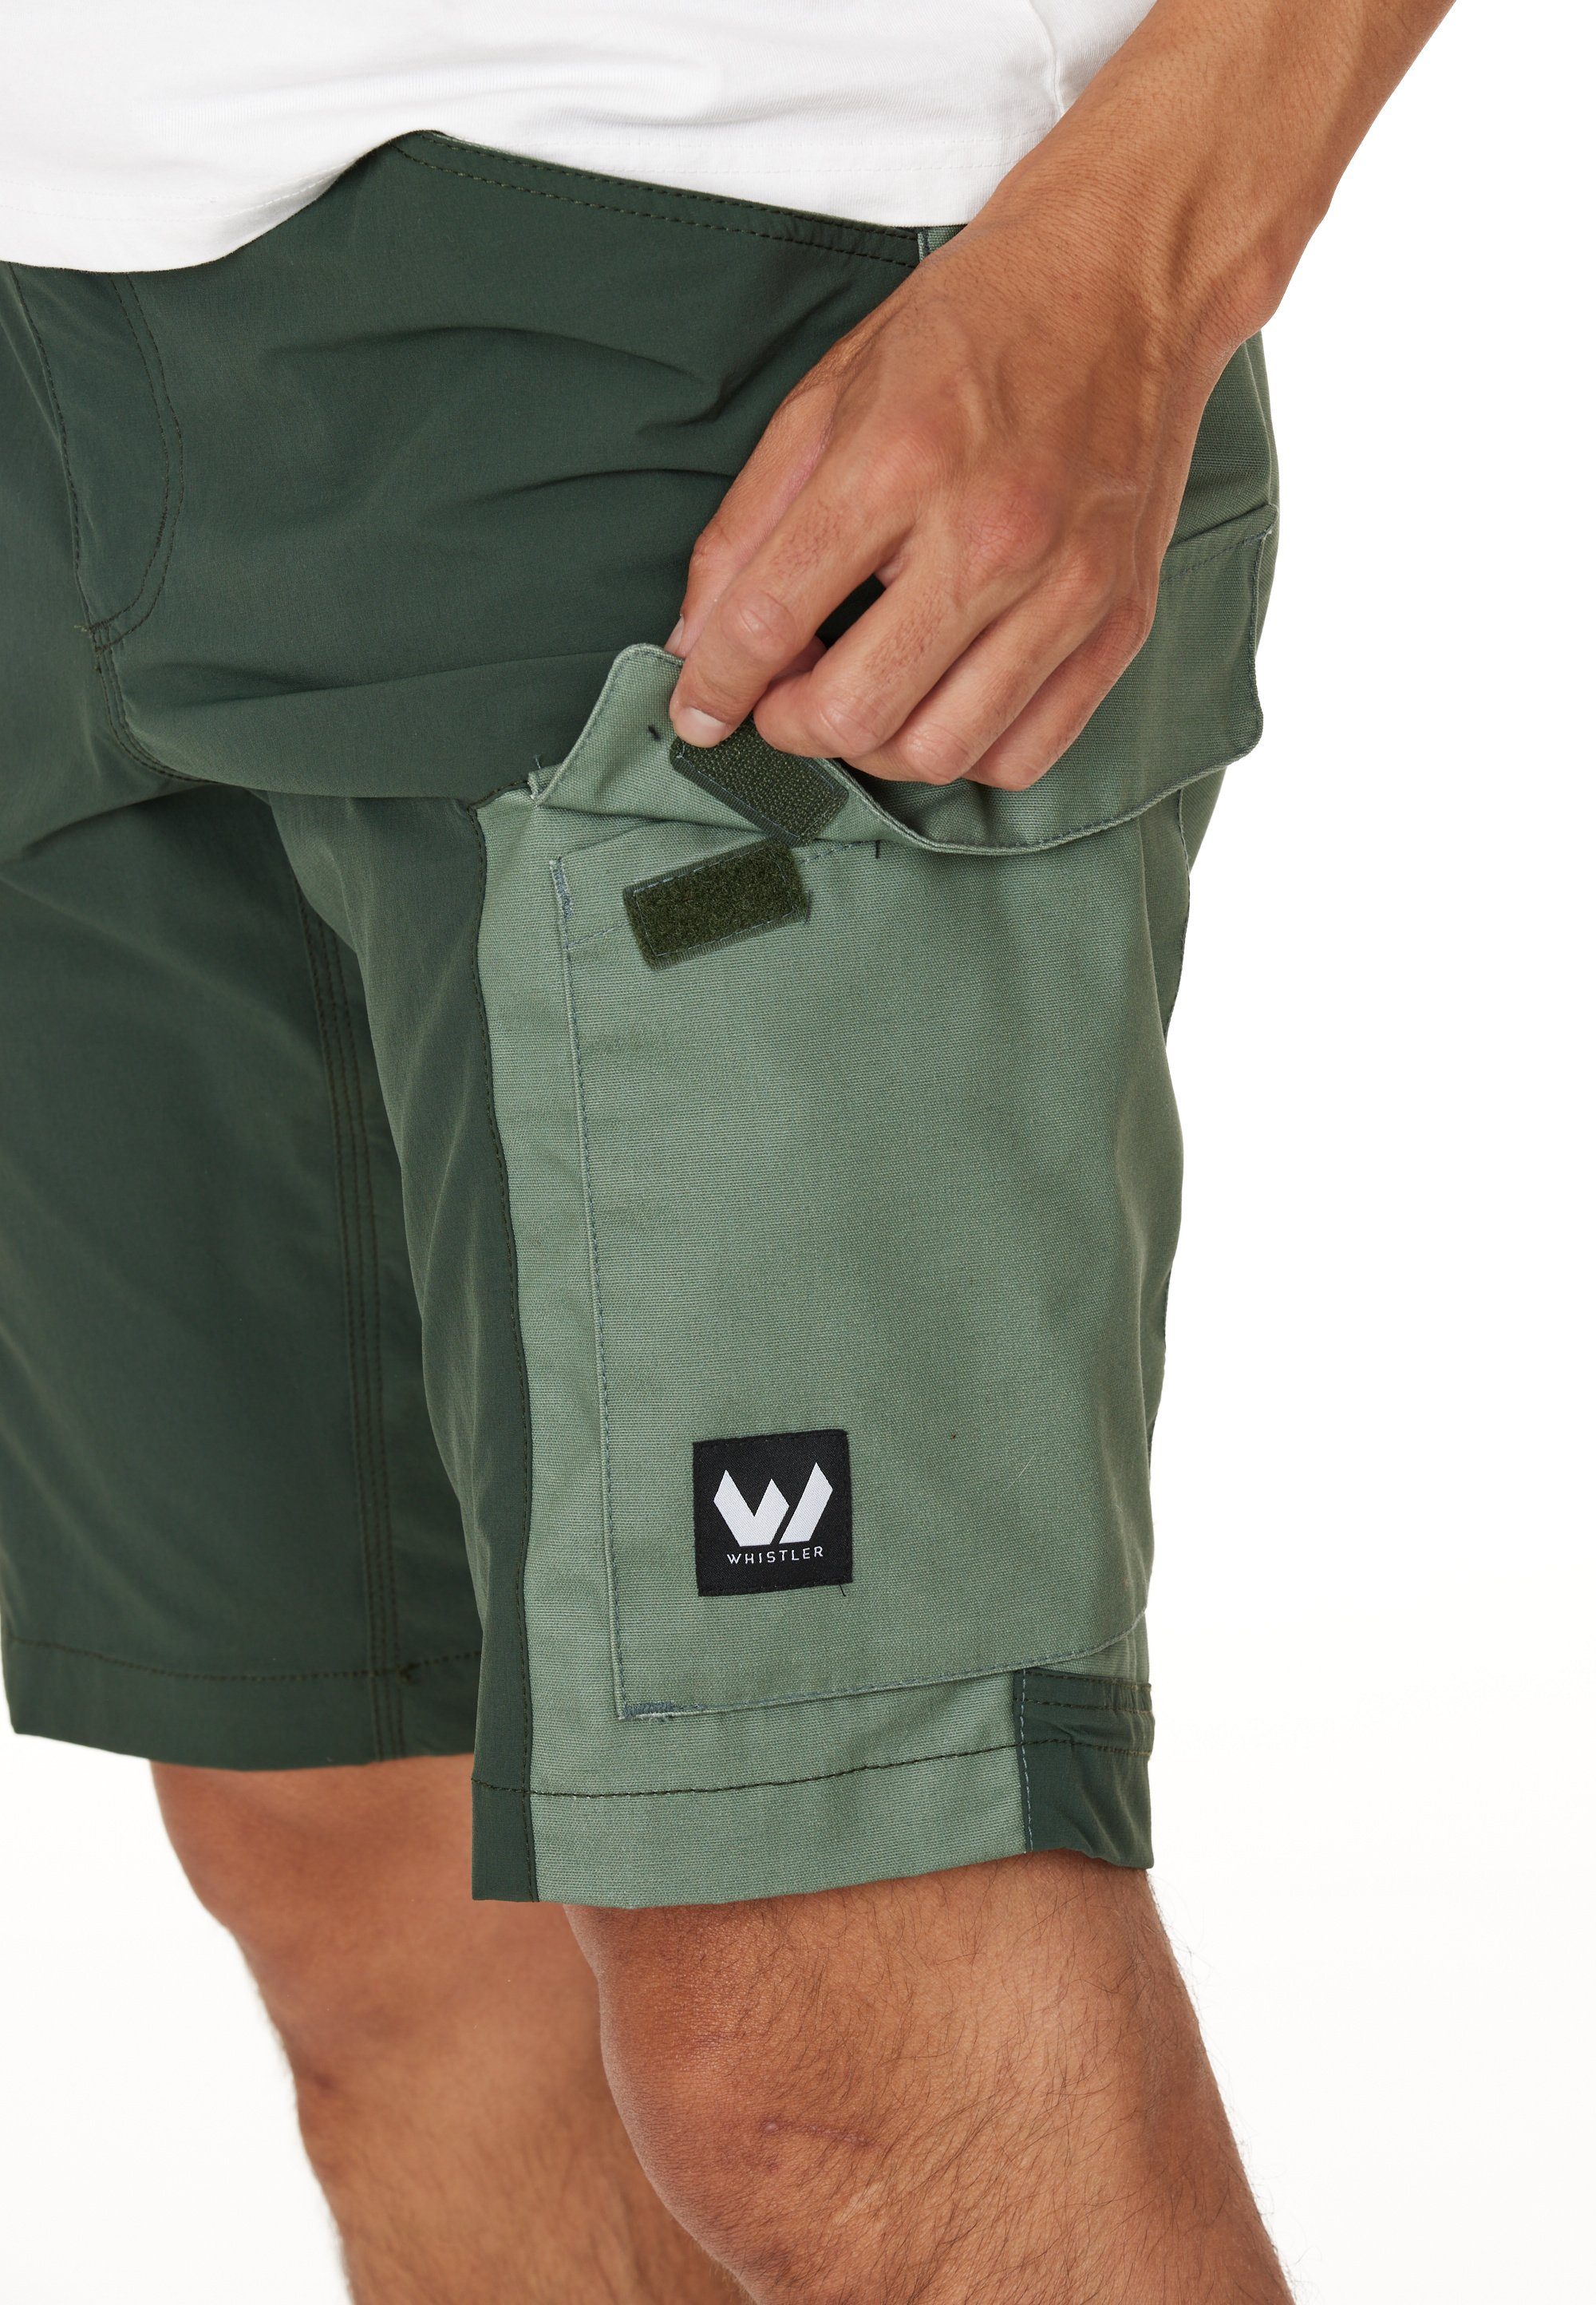 WHISTLER Shorts ROMMY mit atmungsaktivem Materialmix dunkelgrün